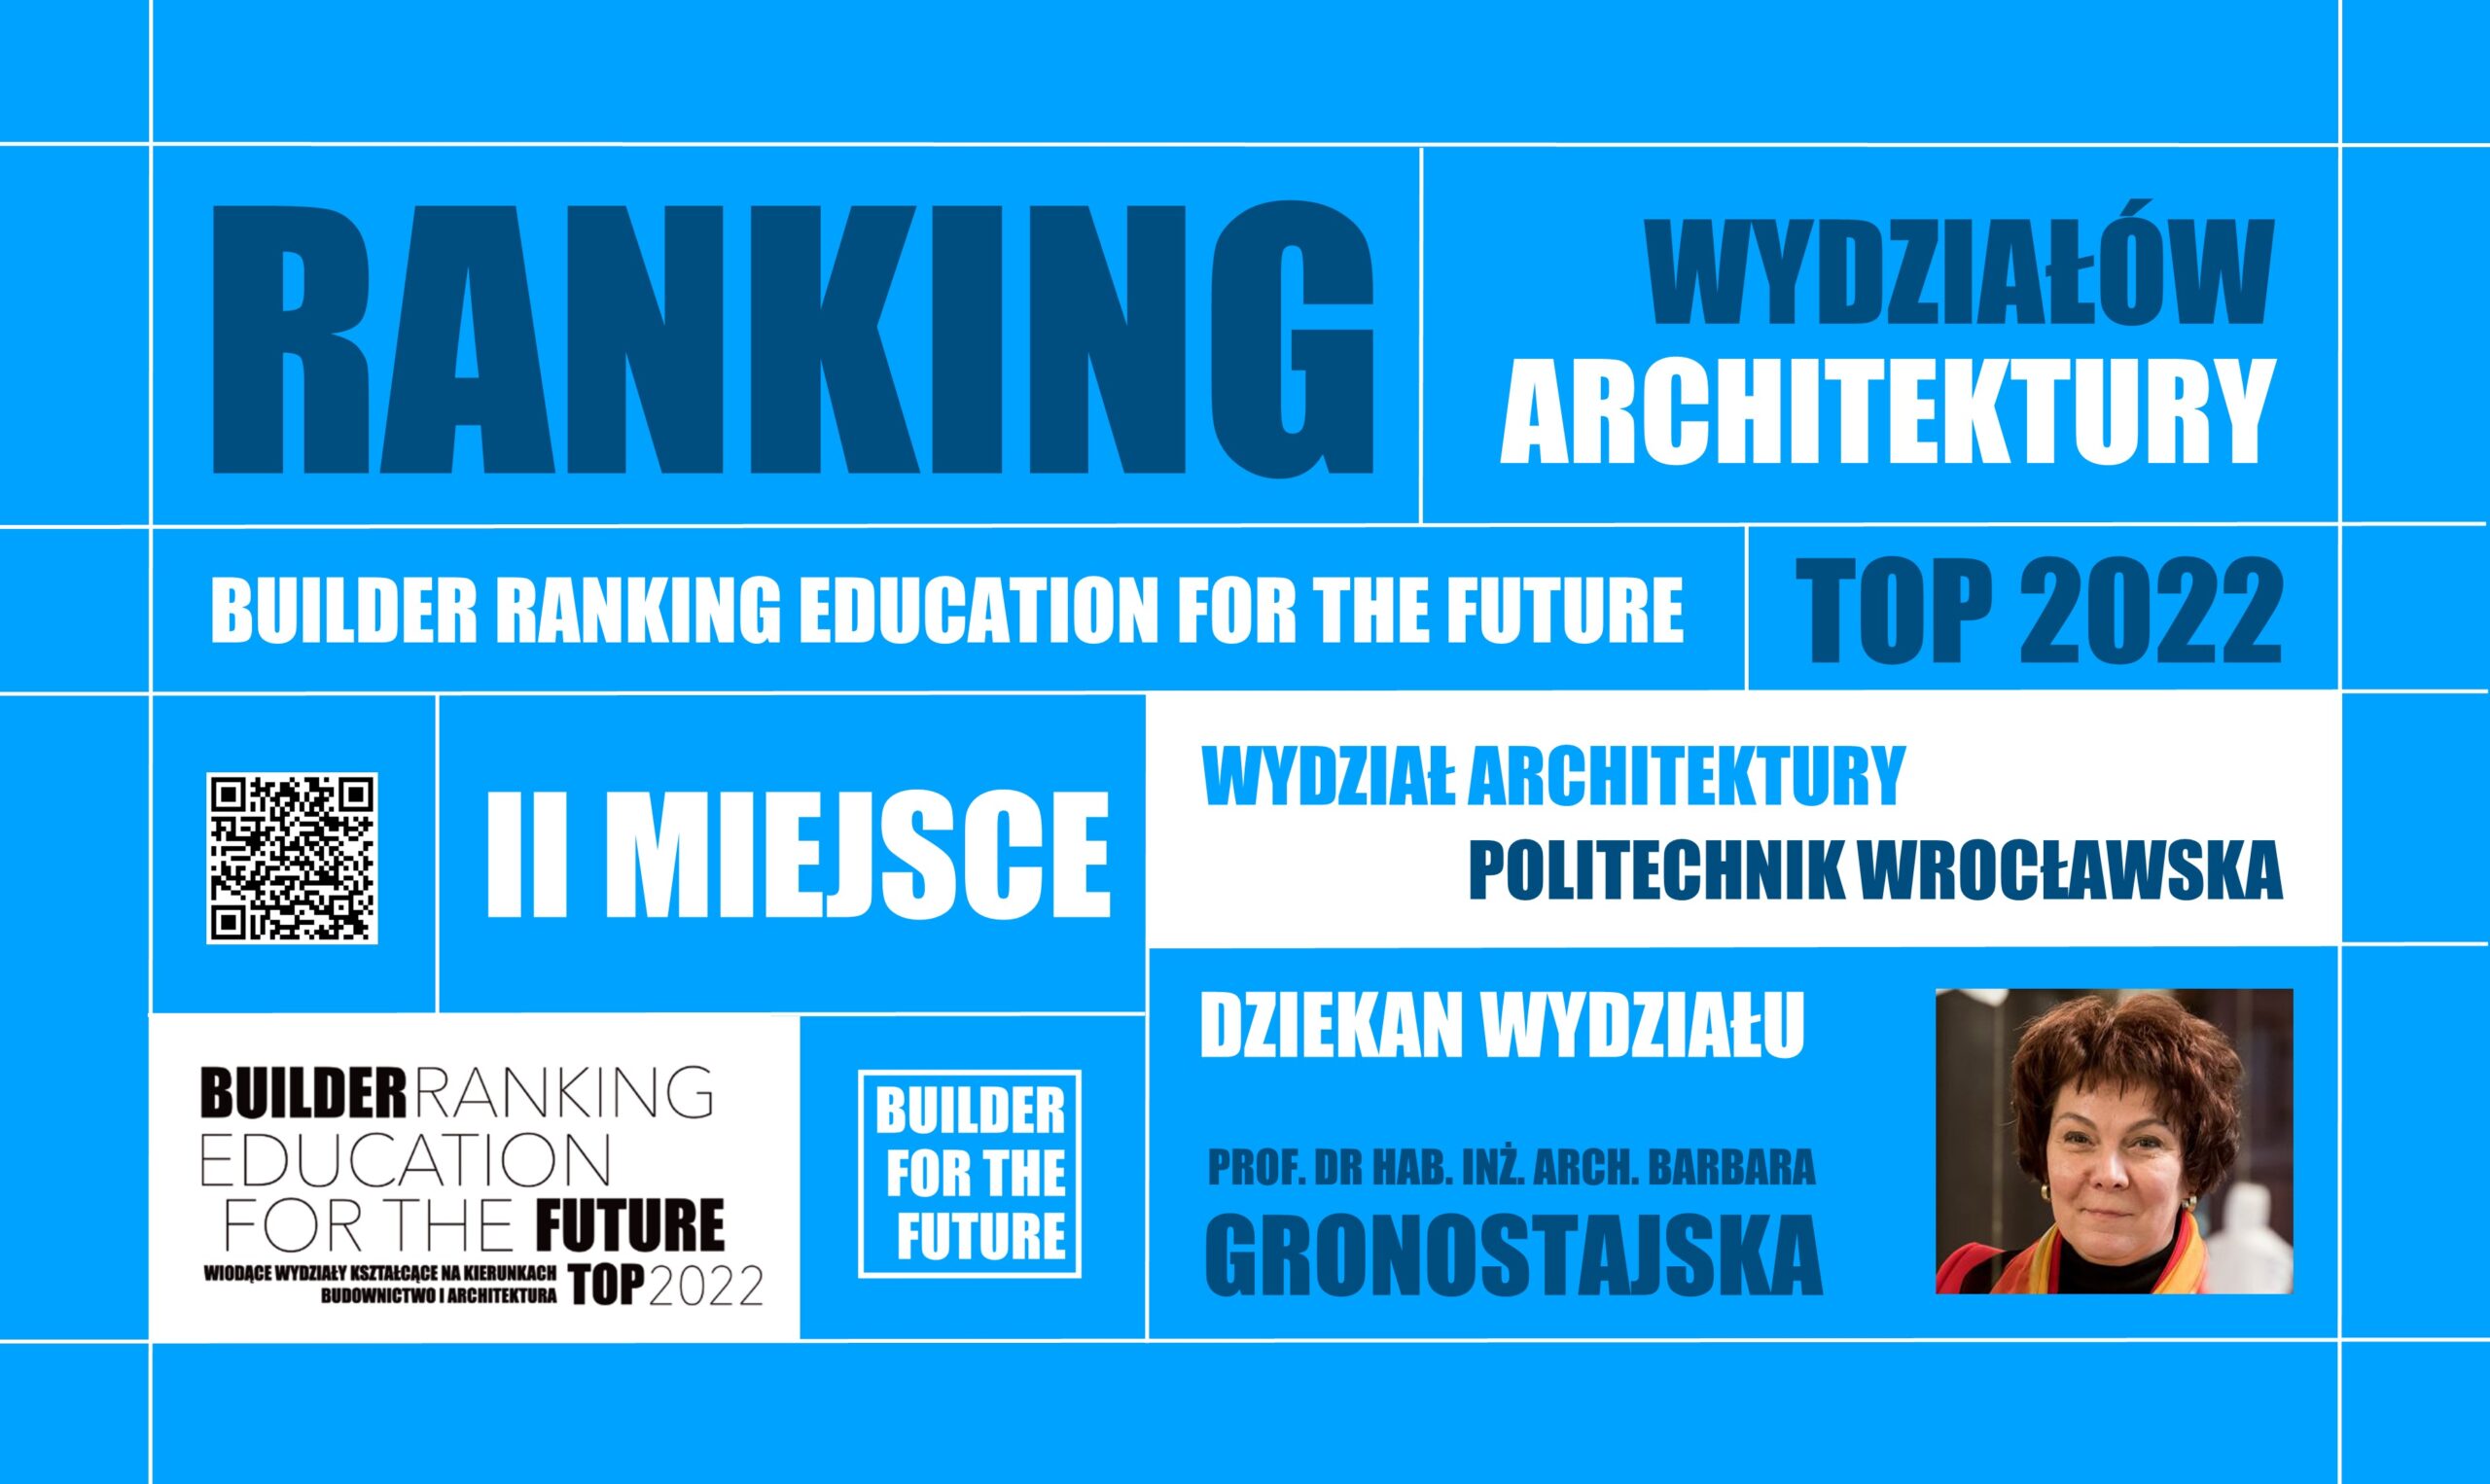 II MIEJSCE W RANKINGU WYDZIAŁÓW ARCHITEKTURY – BUILDER RANKING EDUCATION FOR THE FUTURE TOP 2022